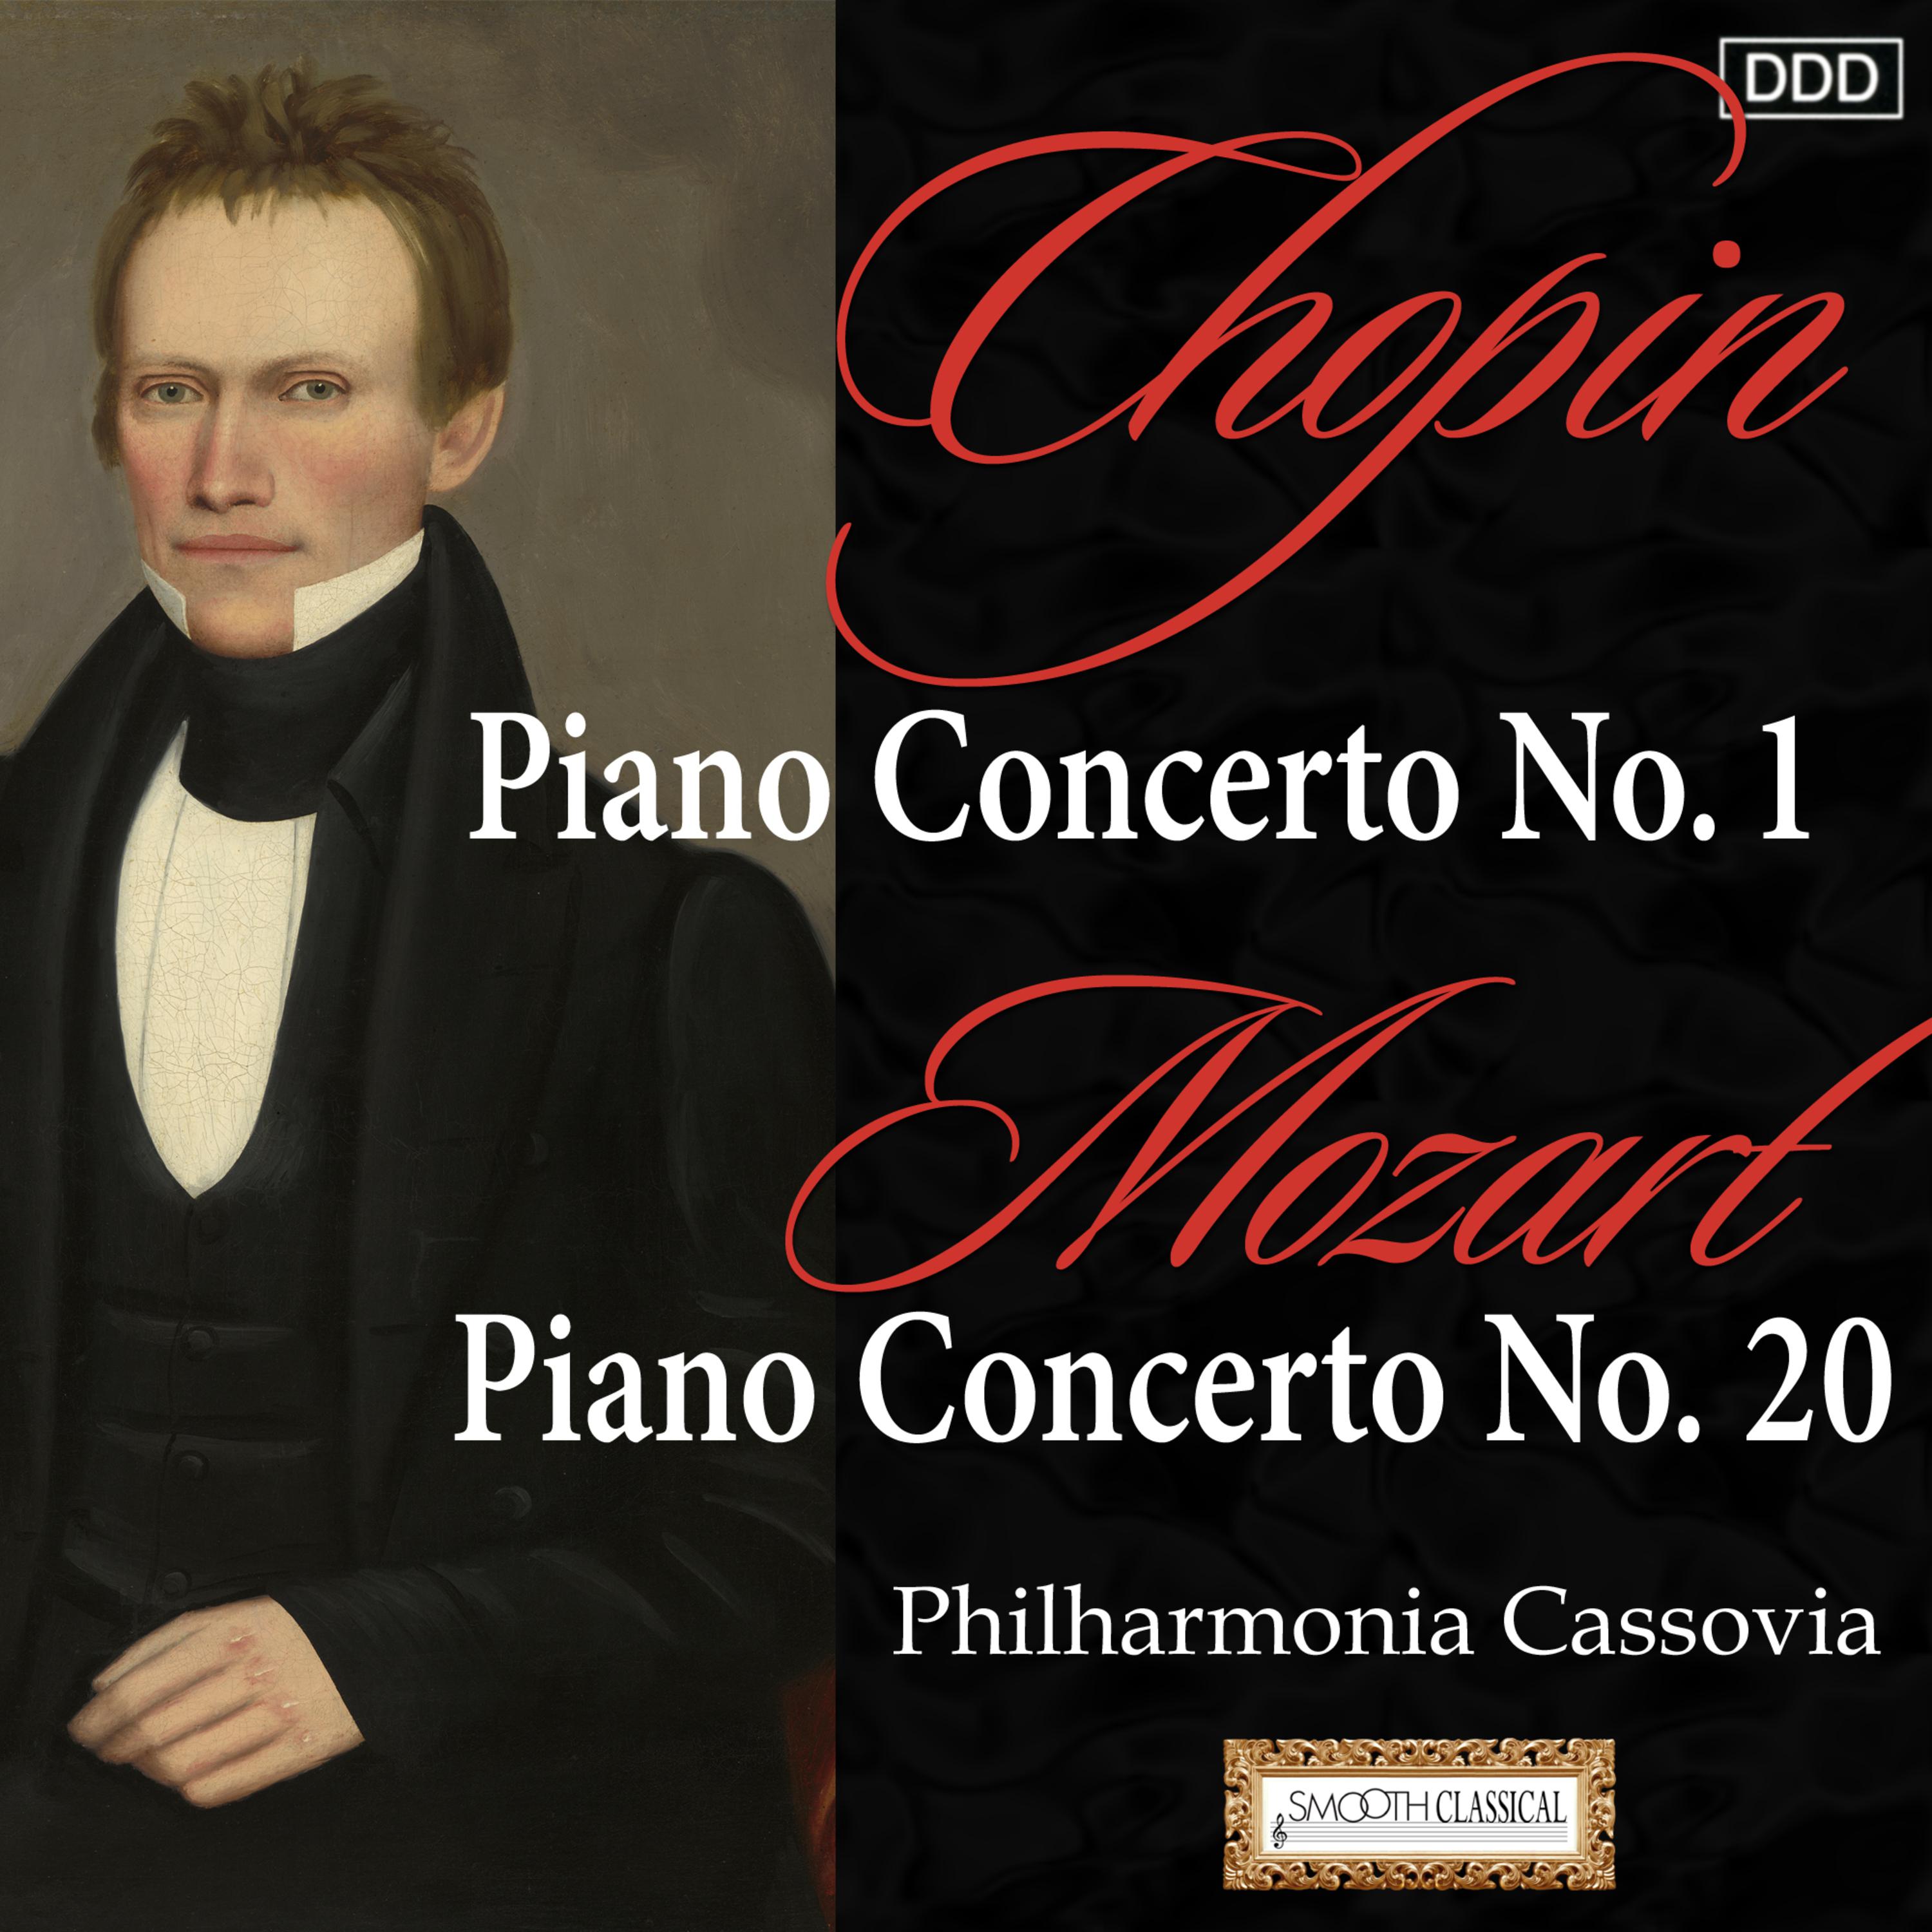 Chopin: Piano Concerto No. 1 - Mozart: Piano Concerto No. 20